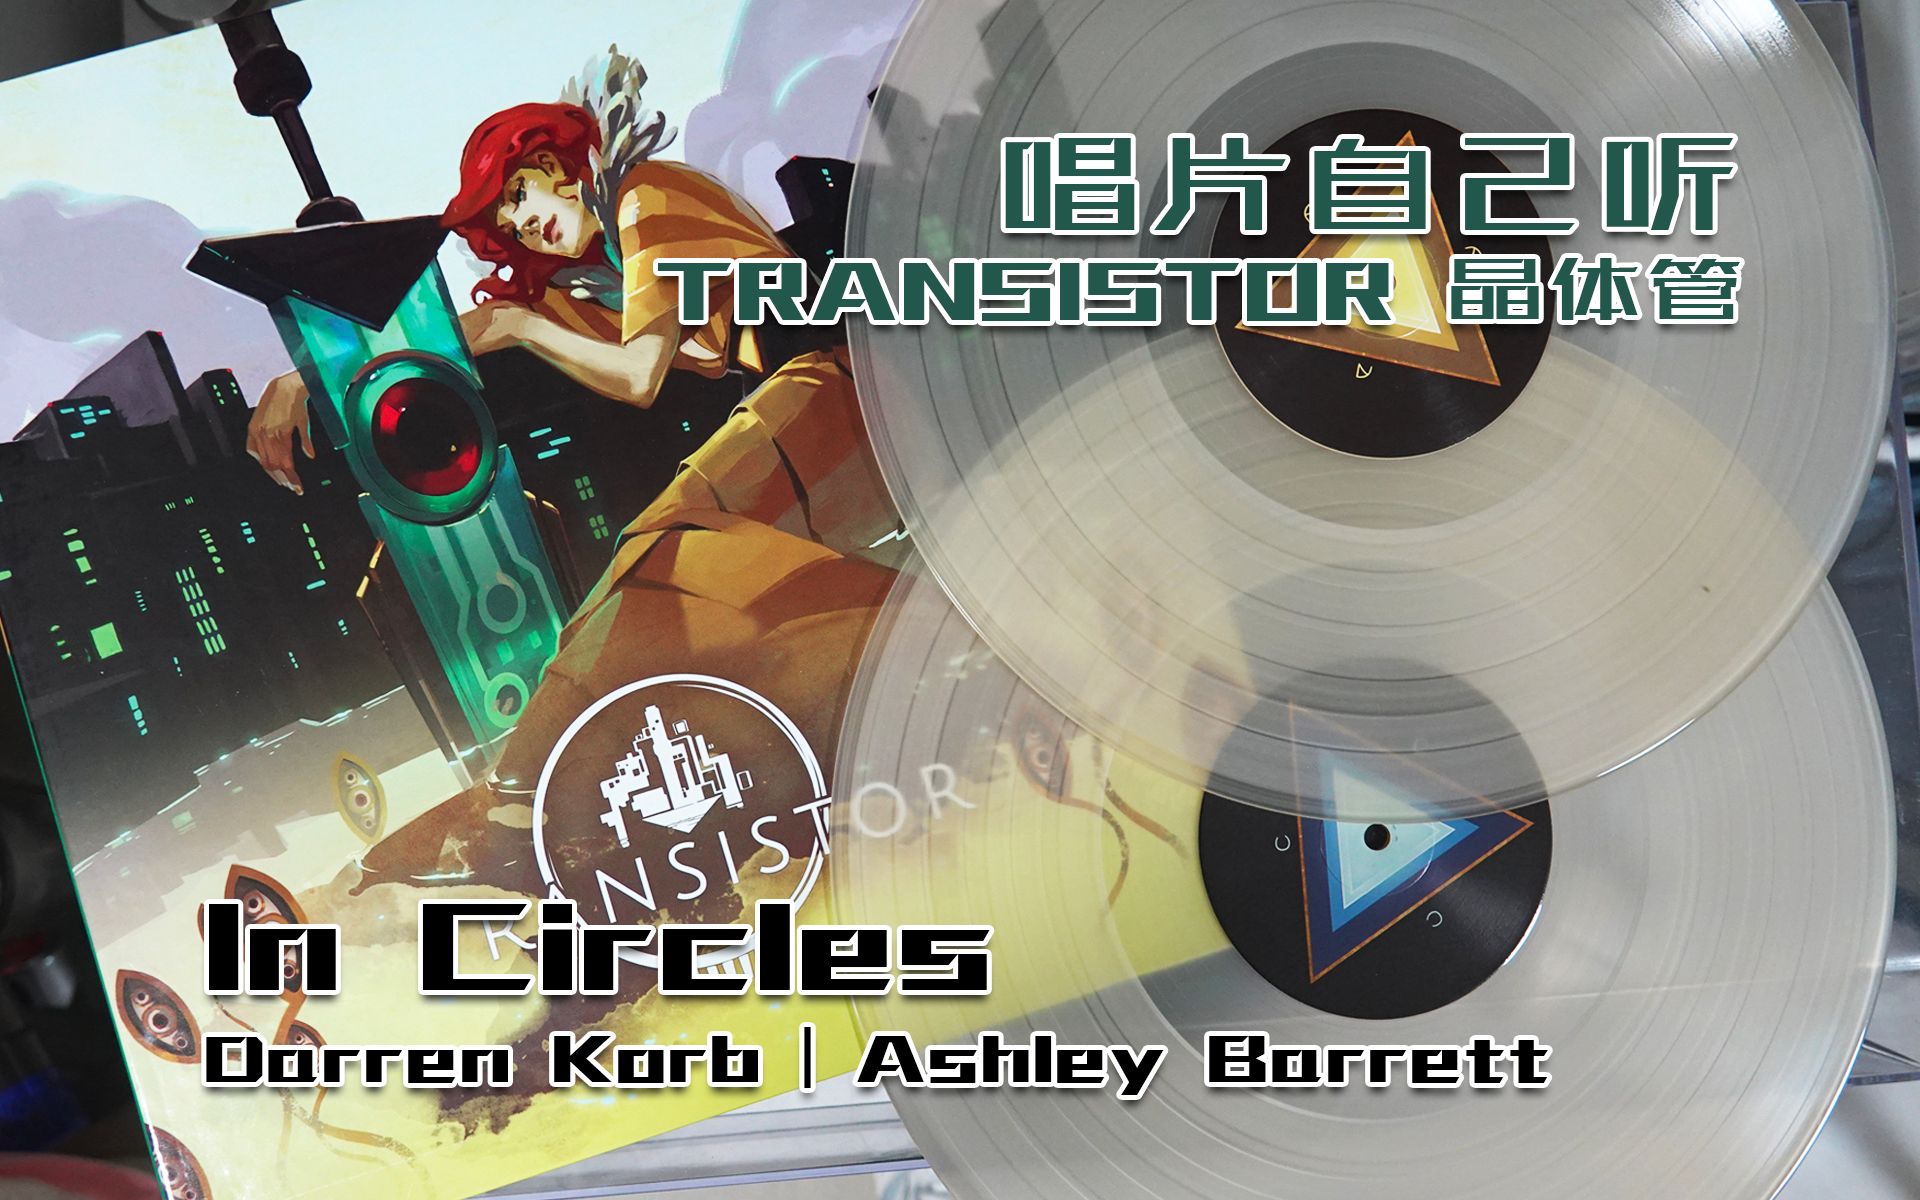 【唱片自己听】Transistor 晶体管 -「In Circles」Darren Korb | Ashley Barrett